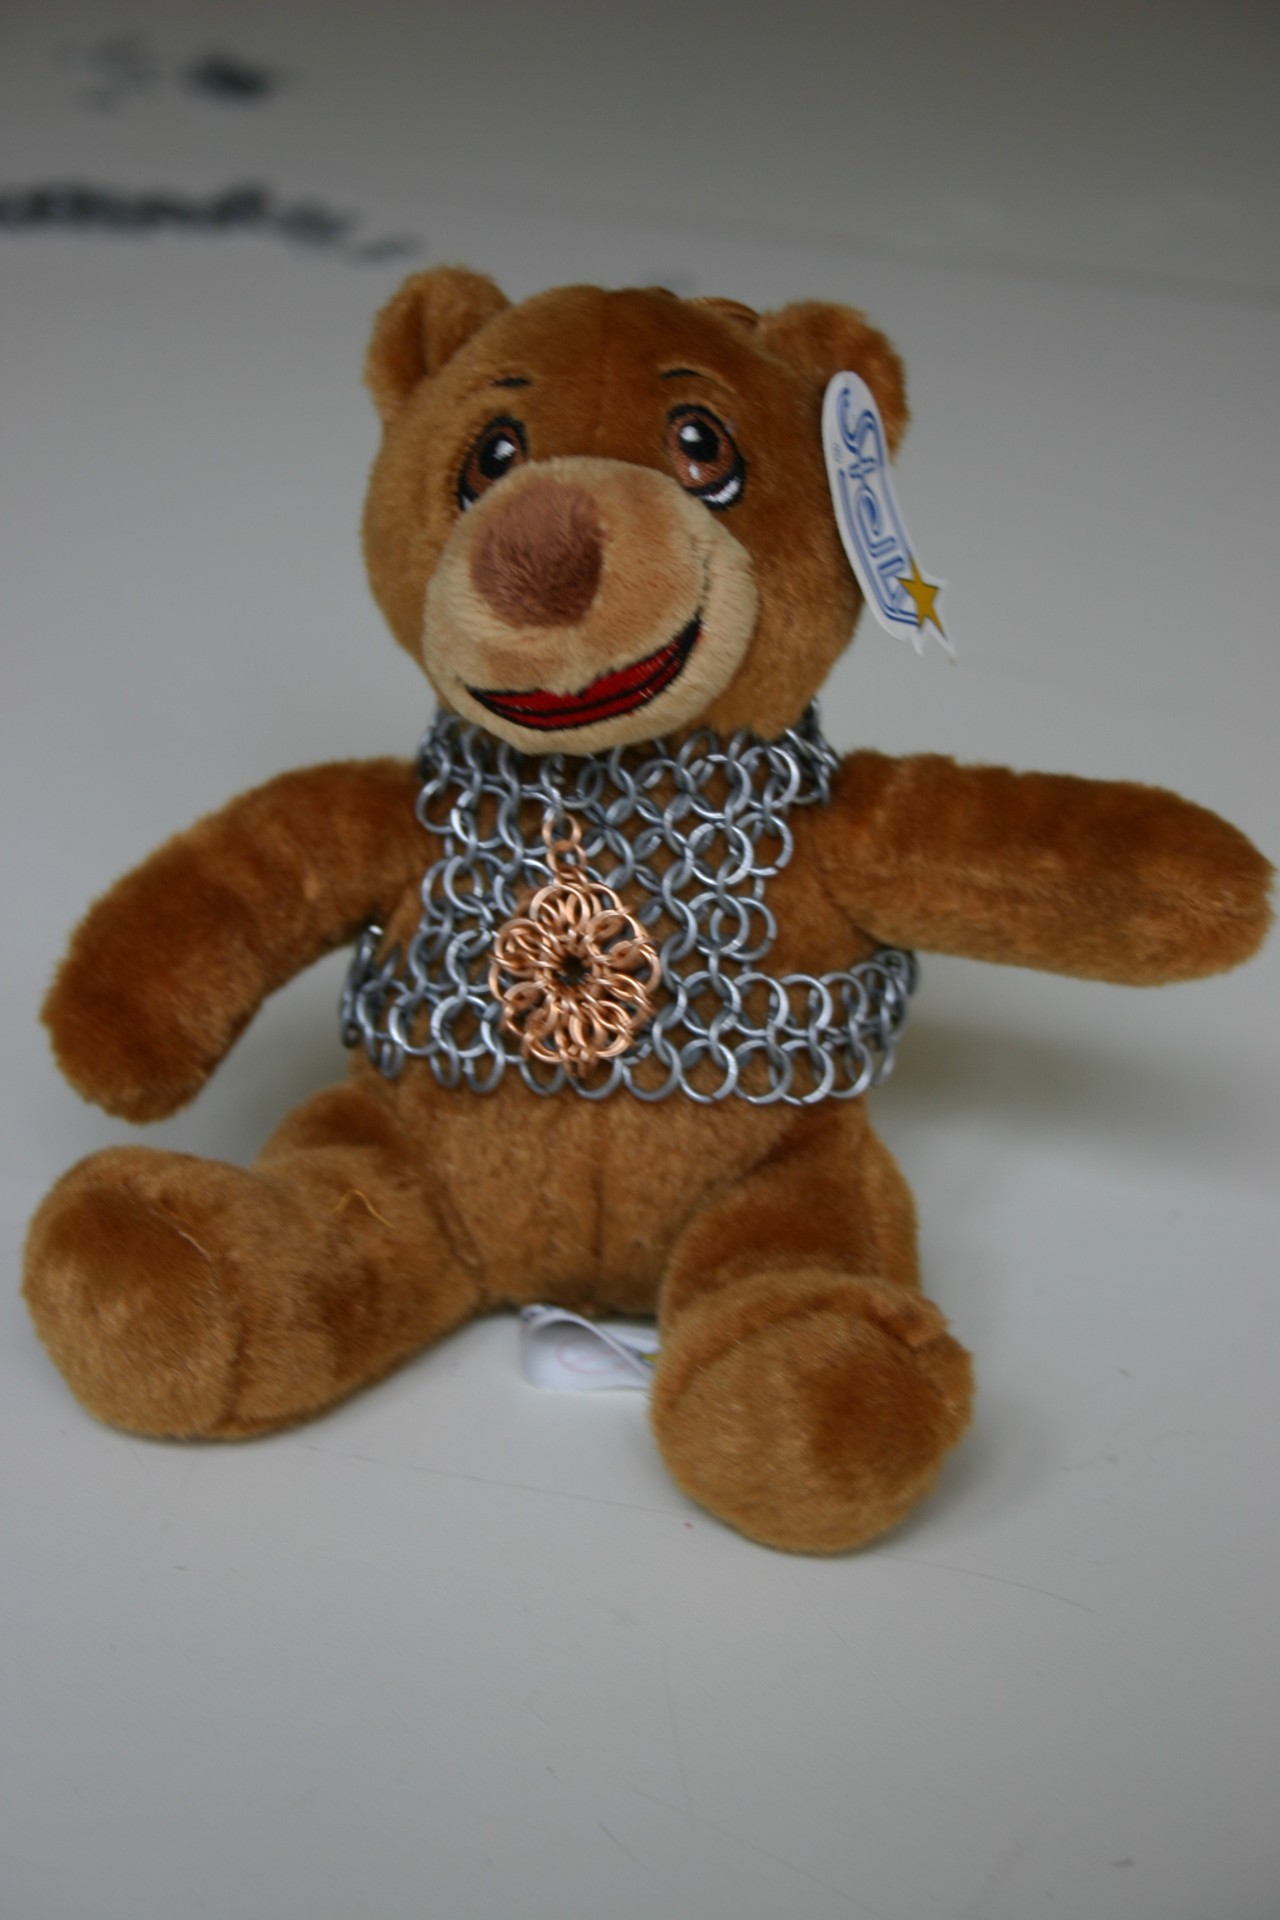 Ritter-Teddy mit Wappen auf der Brust. (Foto: Werner Hagedorn)